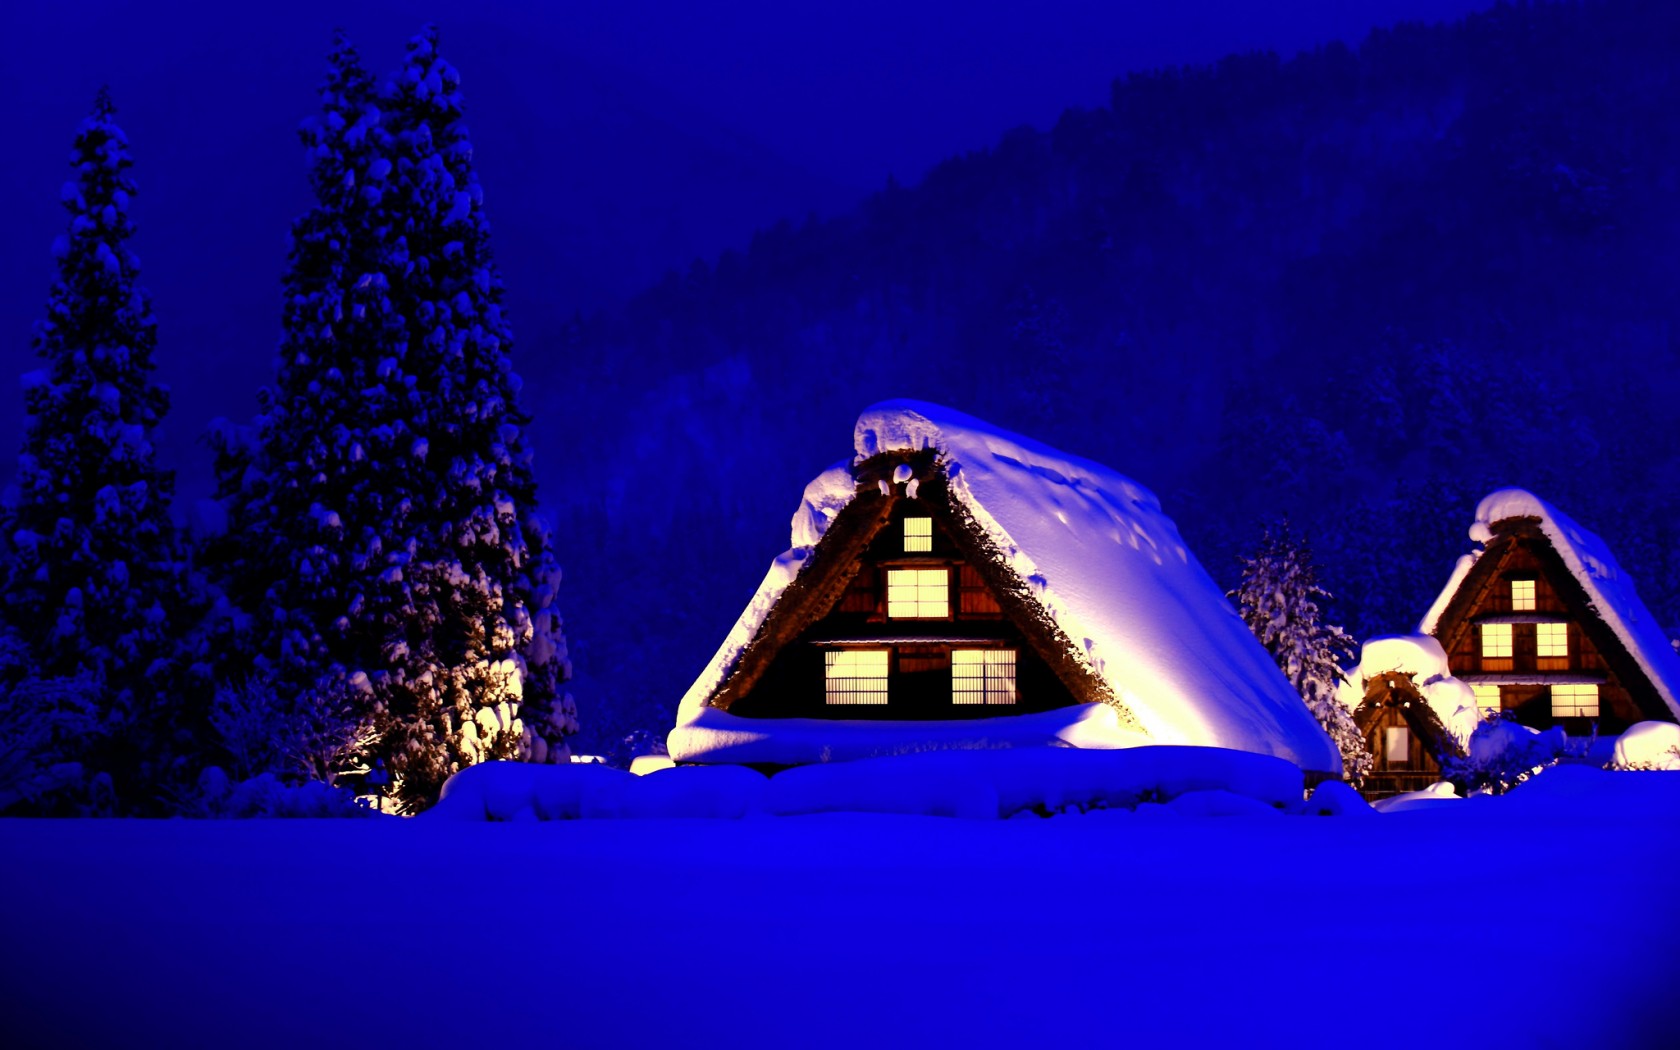 冬天,雪,山,房子,灯光,风景桌面壁纸